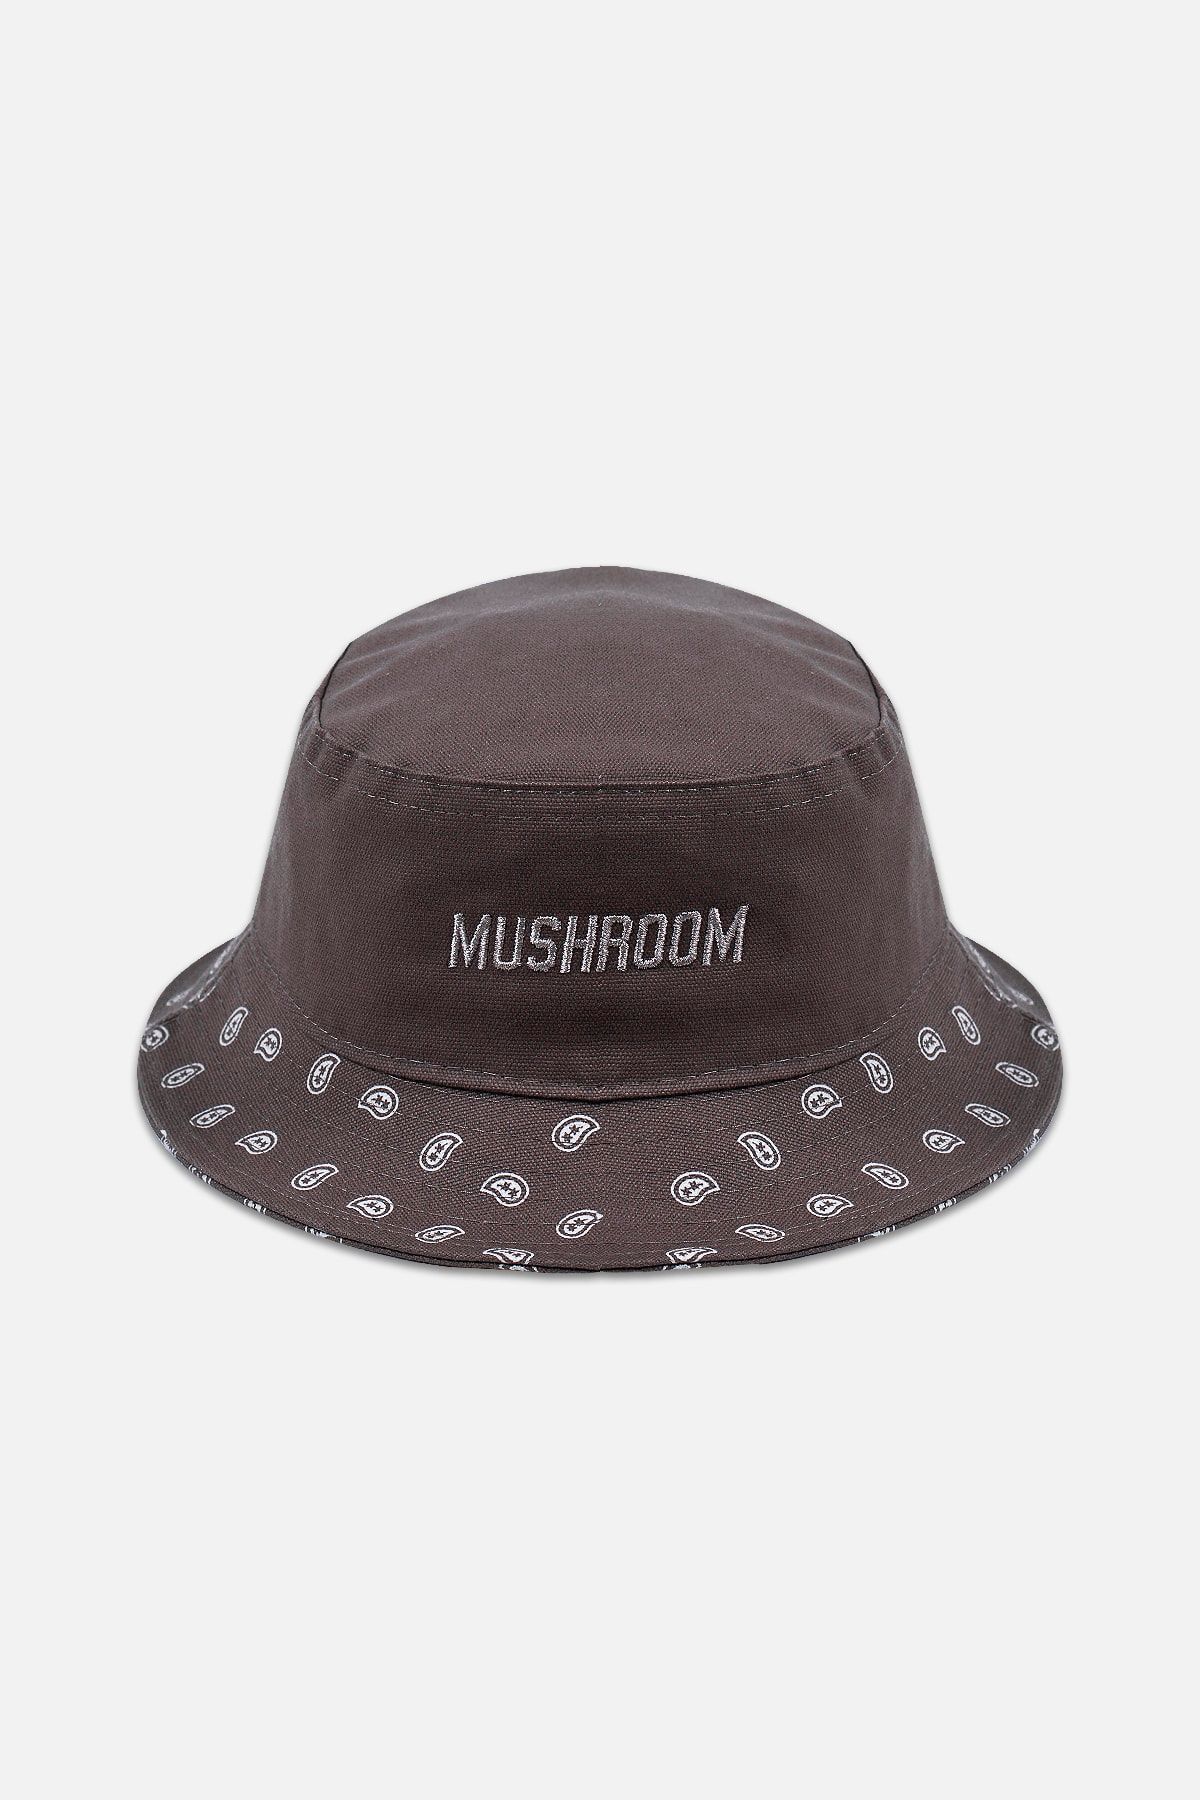 Mushroom Apparel Mushroom ''the Dust Bowl'' Bucket Hat Şapka-kahverengi